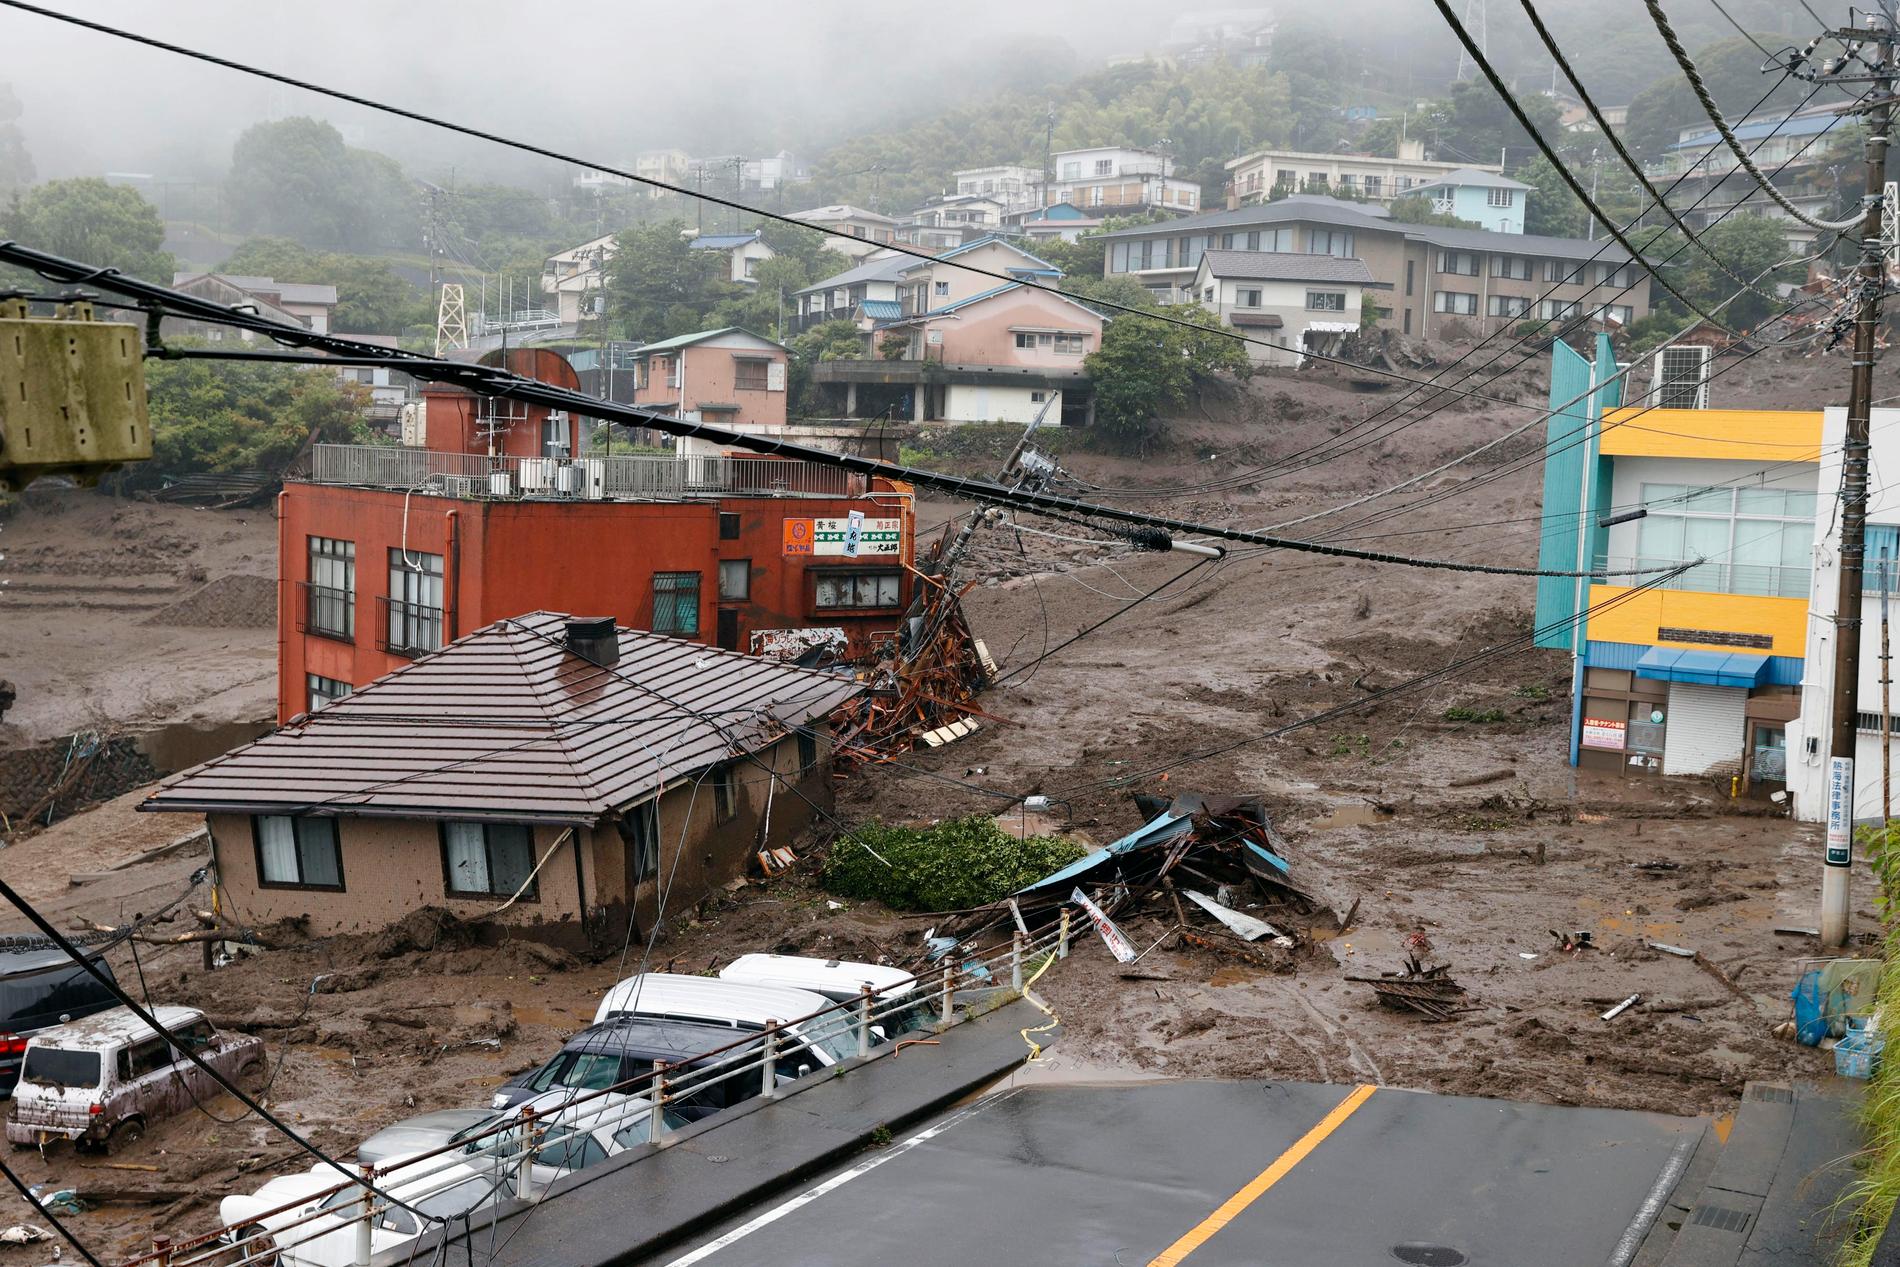 Människor har omkommit och saknas efter ett jordskred i Atami, Japan.